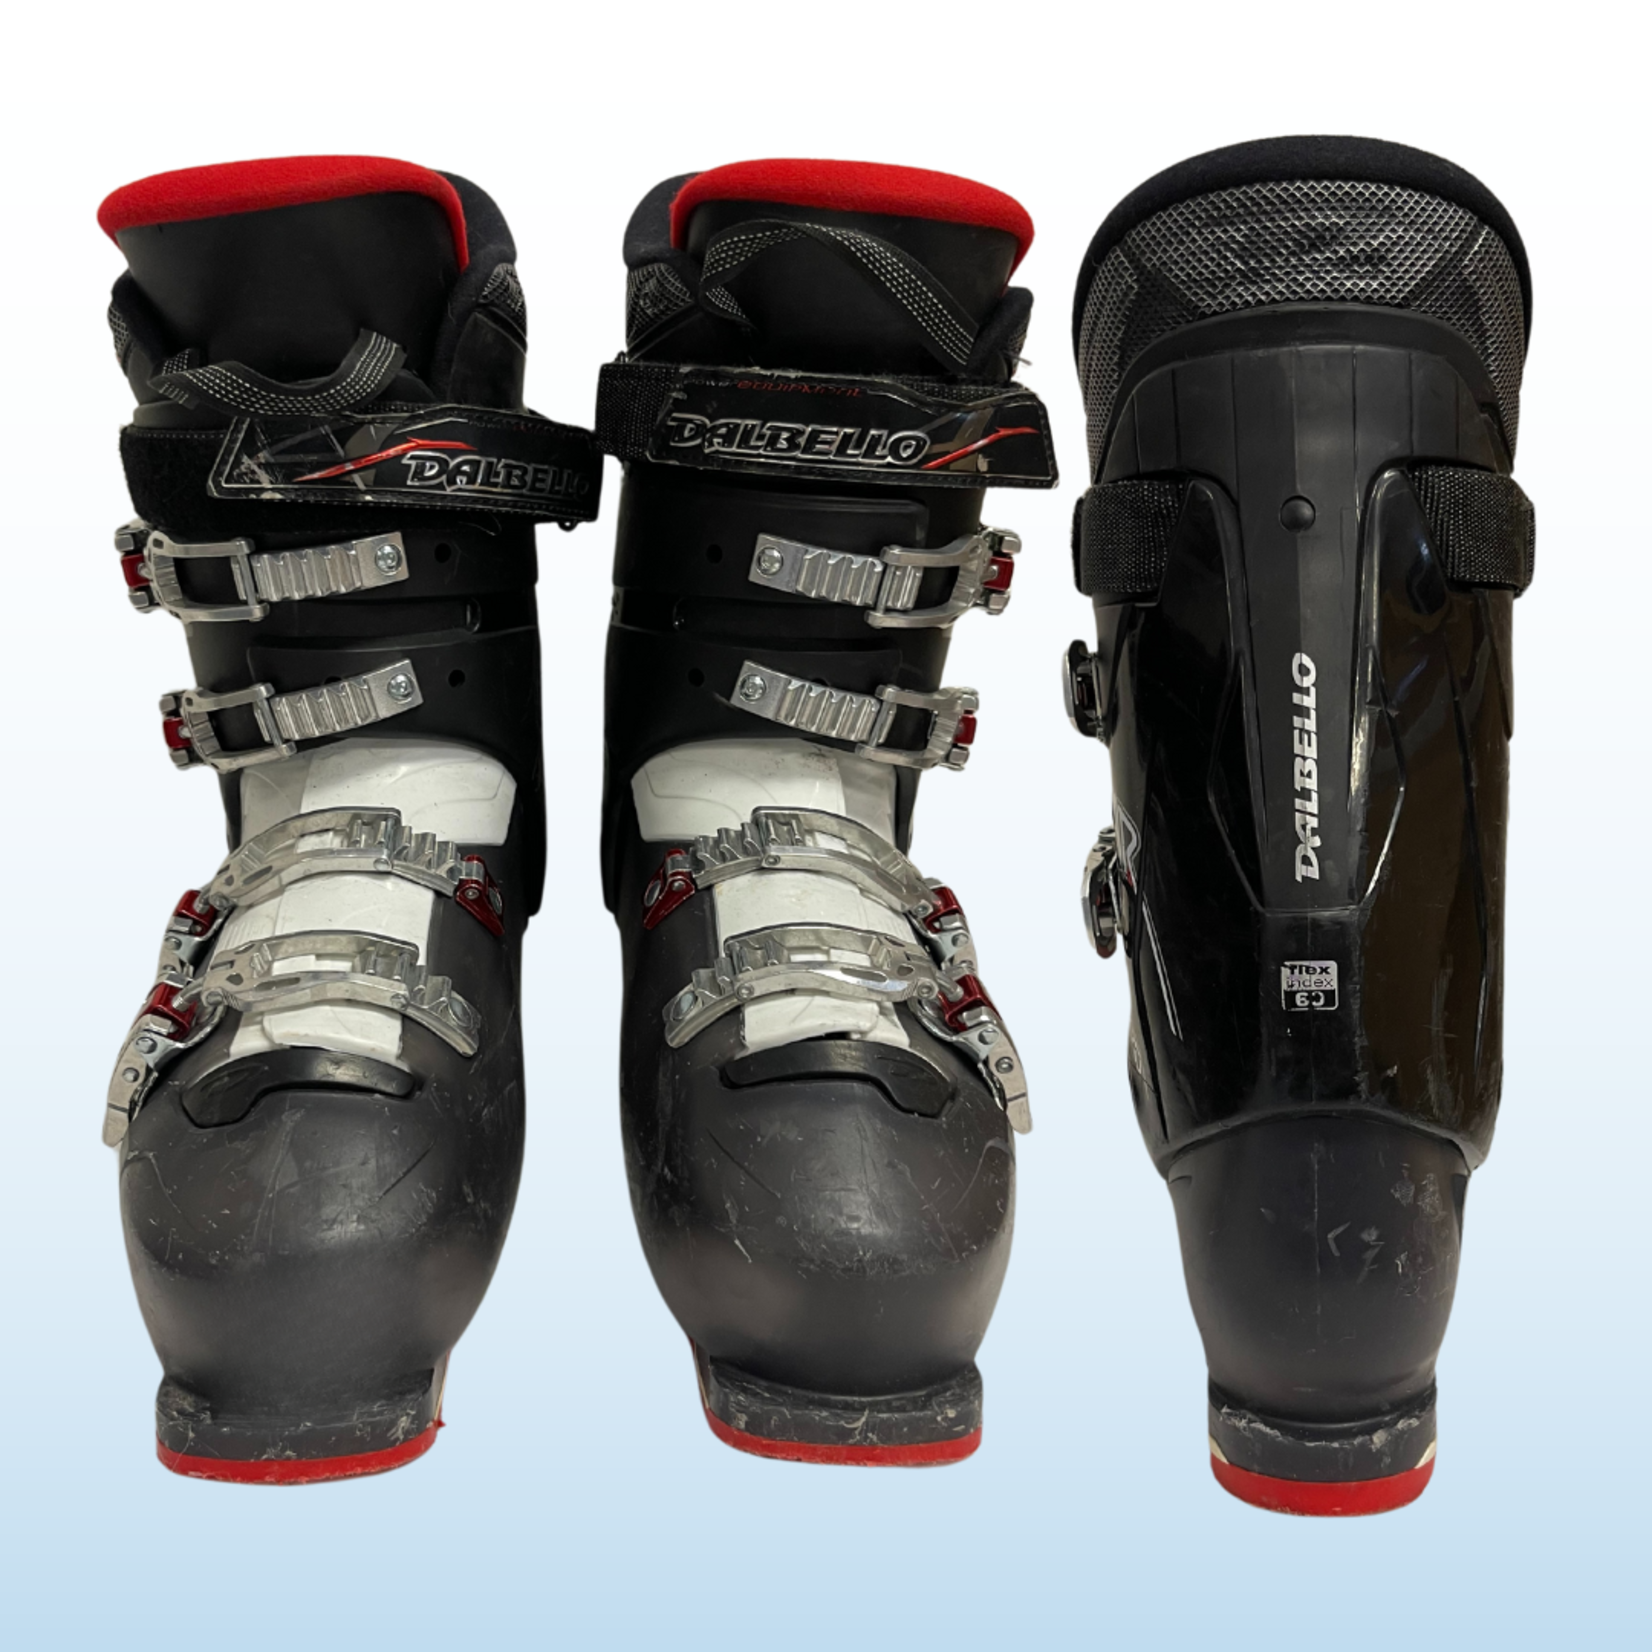 Dalbello Dalbello Aerro 65 Ski Boots, Size 29.5